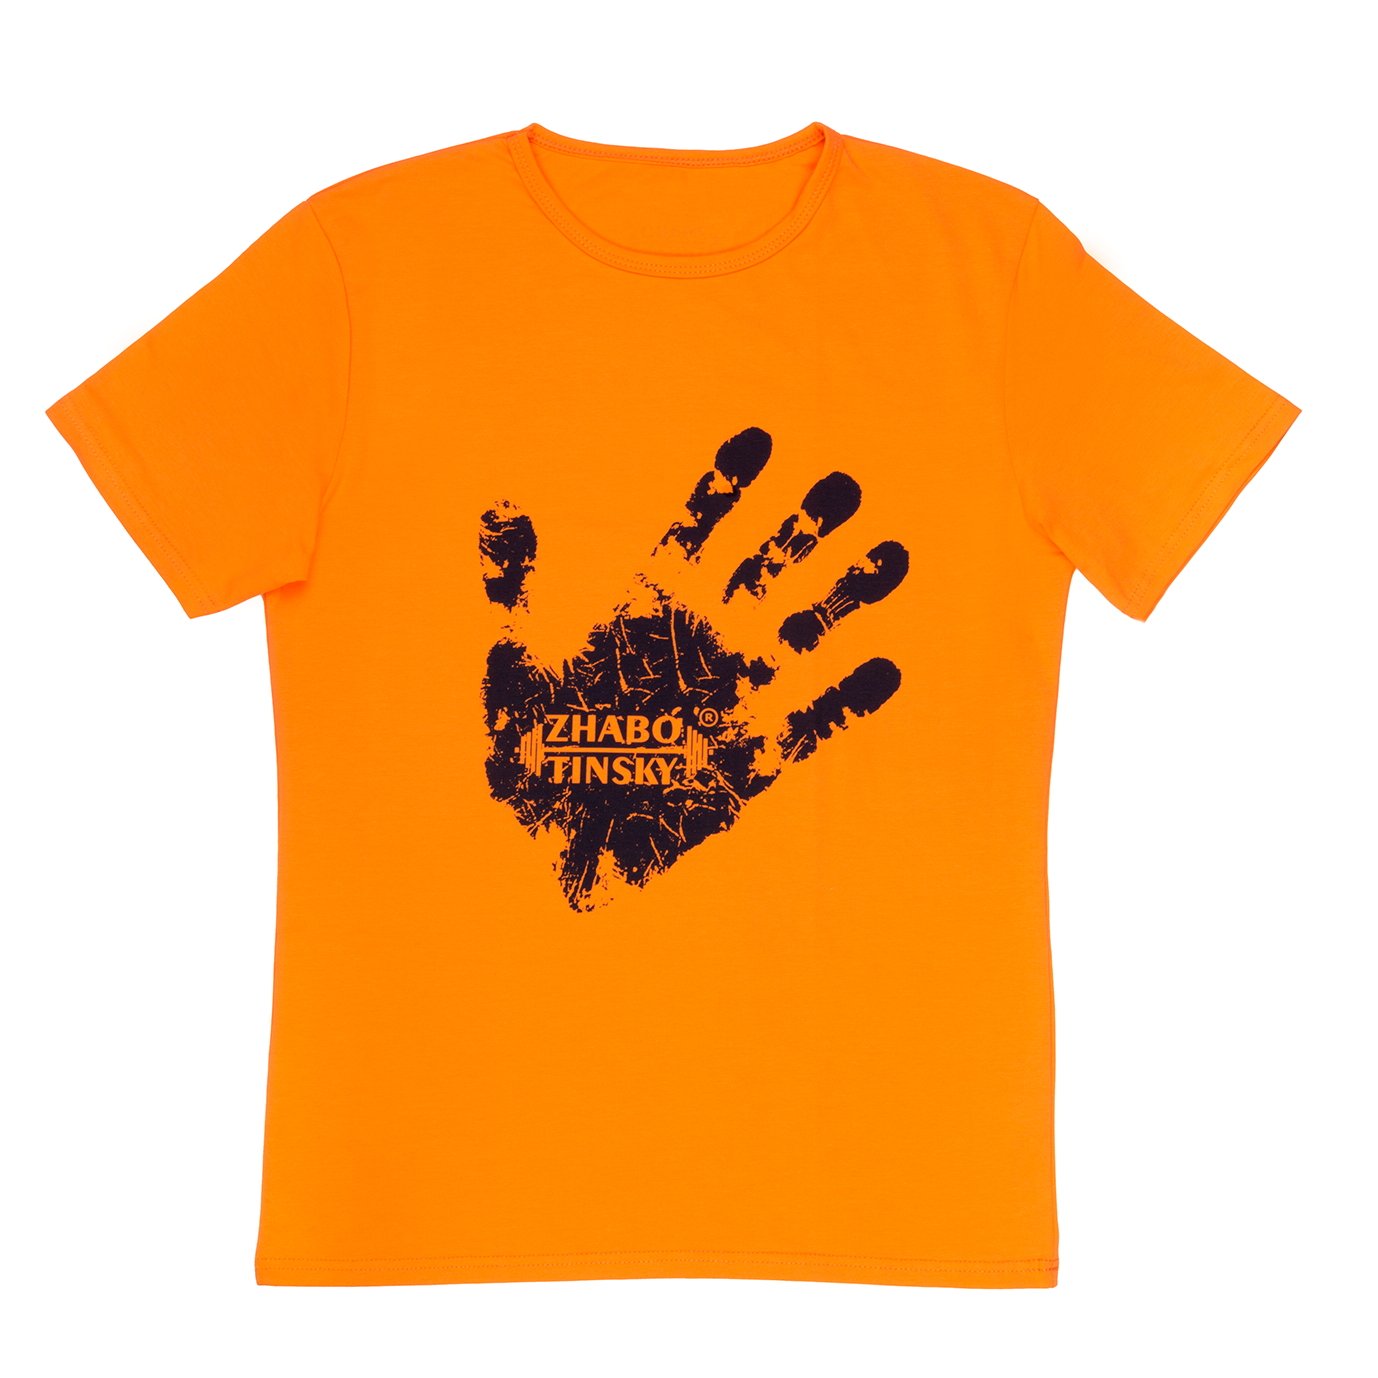 Men's T-shirt Winner's hand, orange, S